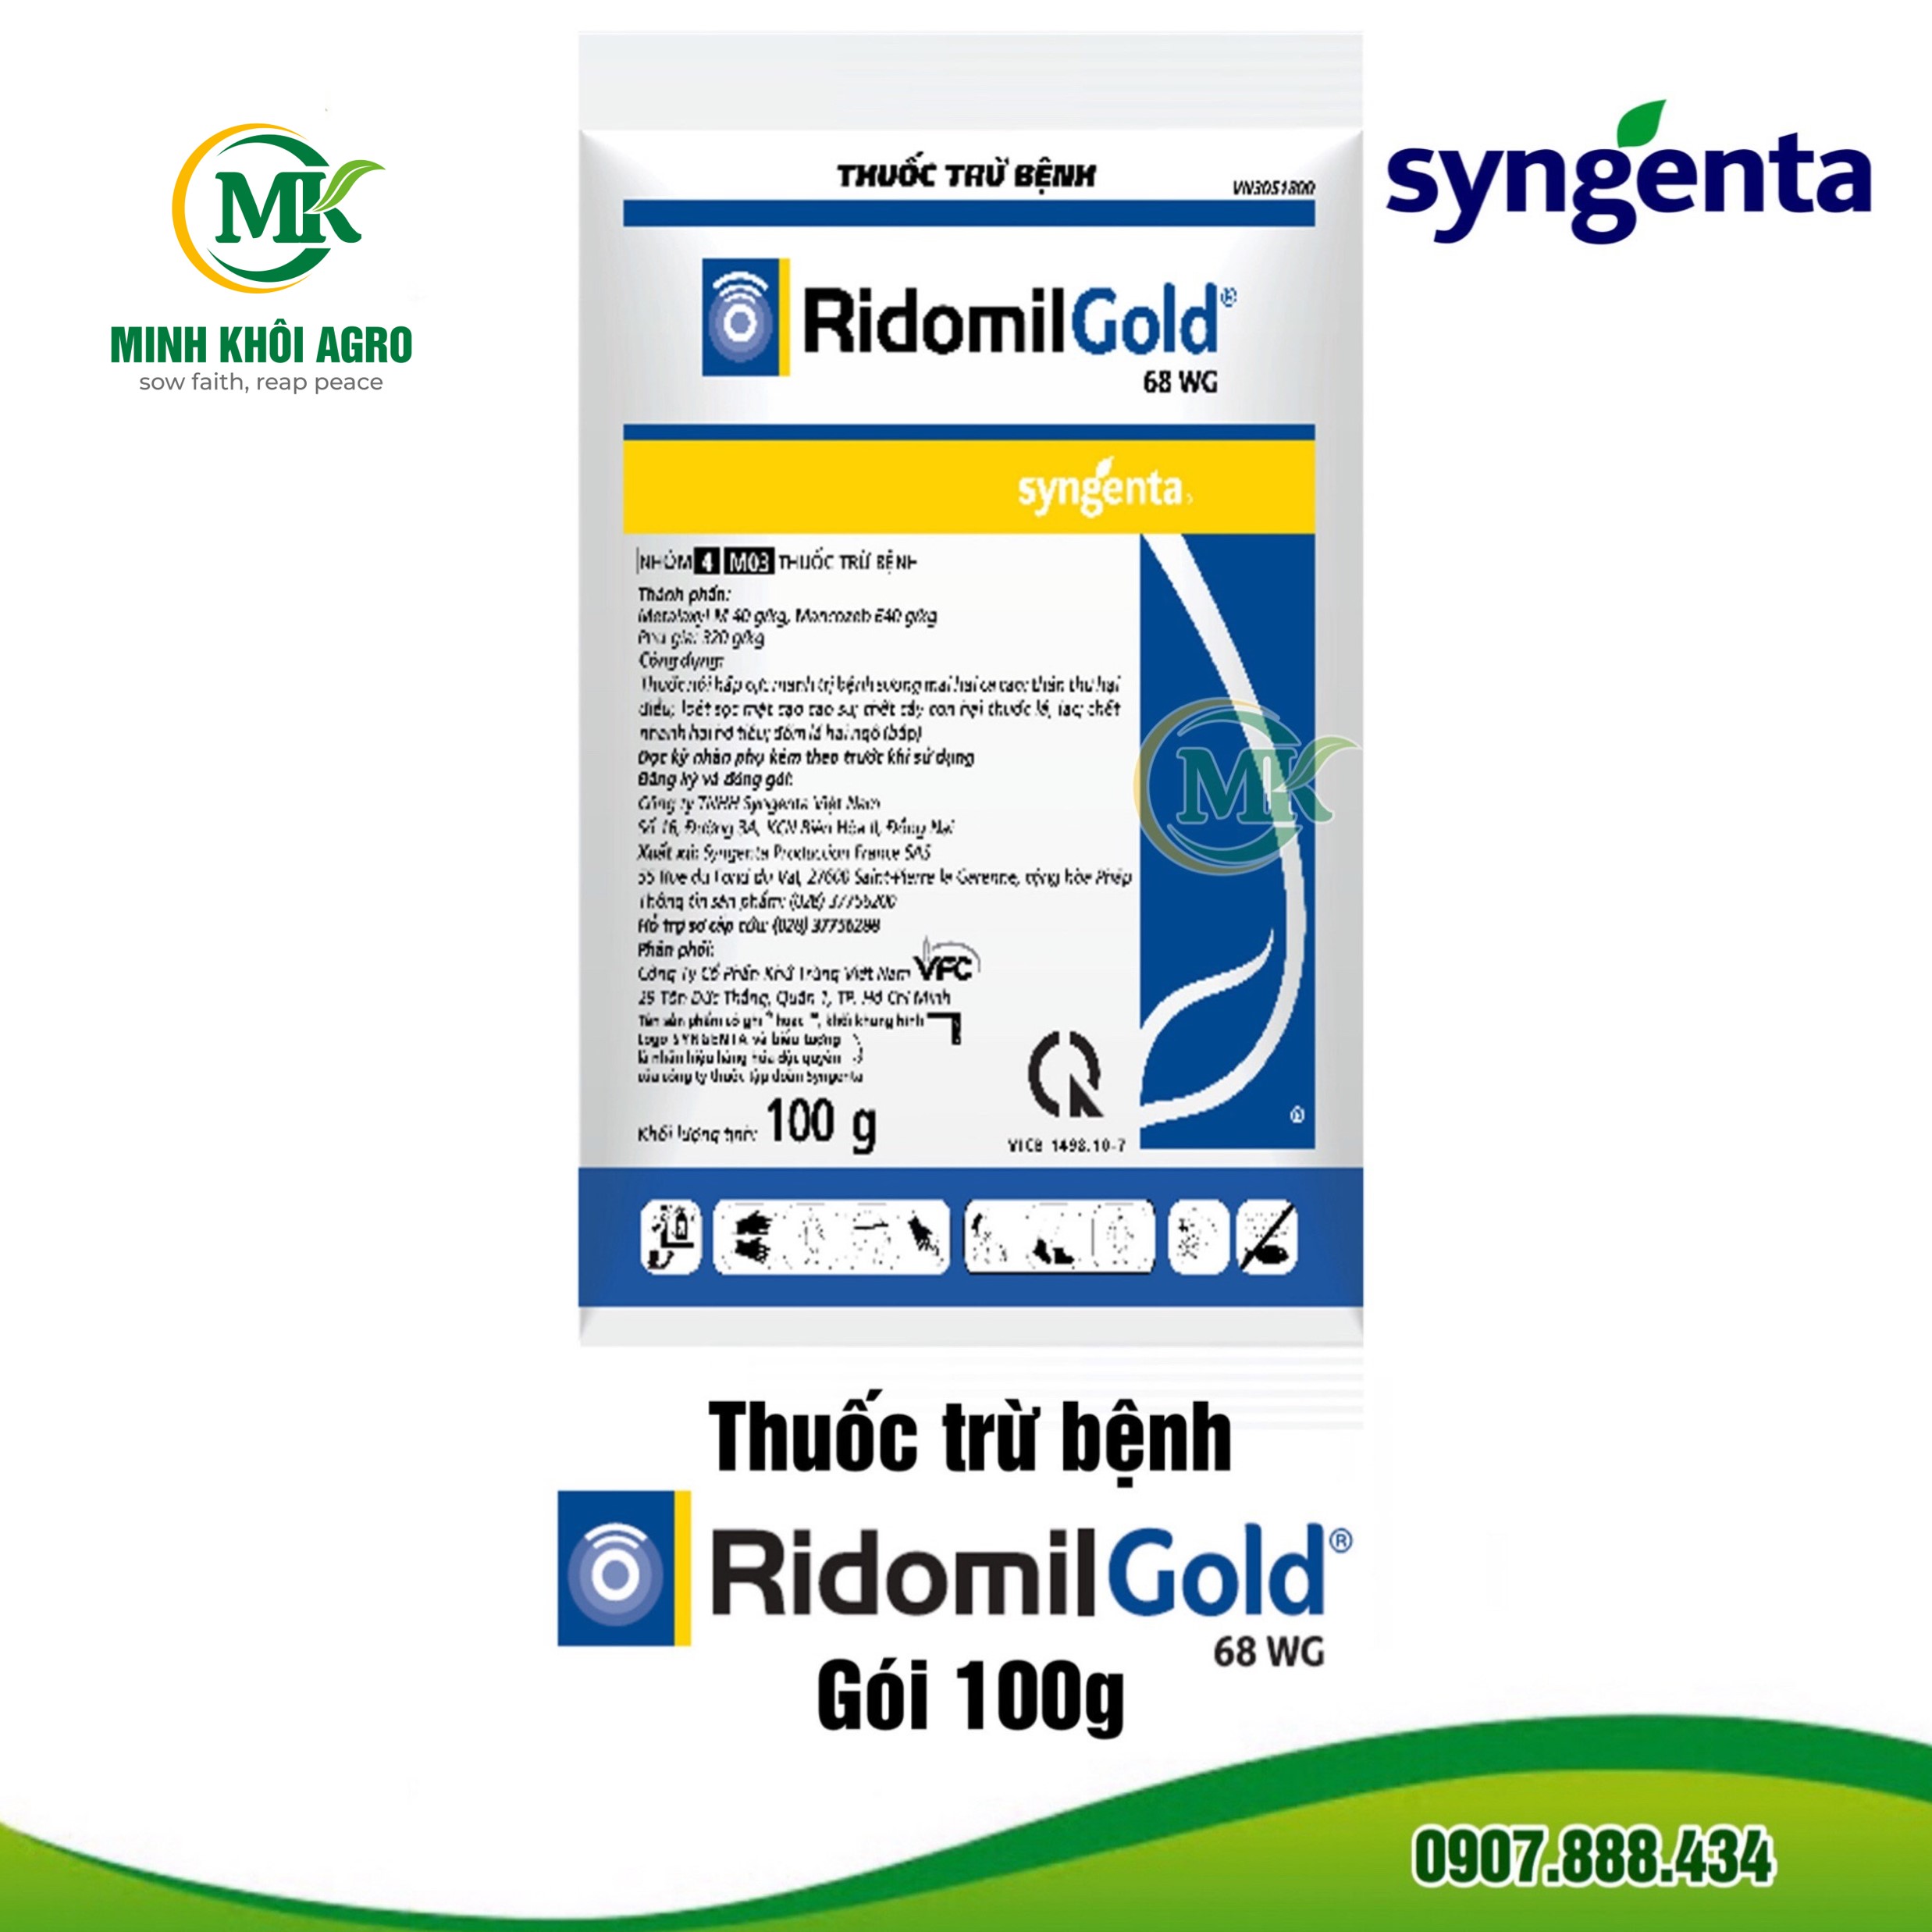 Ridomil Gold 68WG - Gói 100g